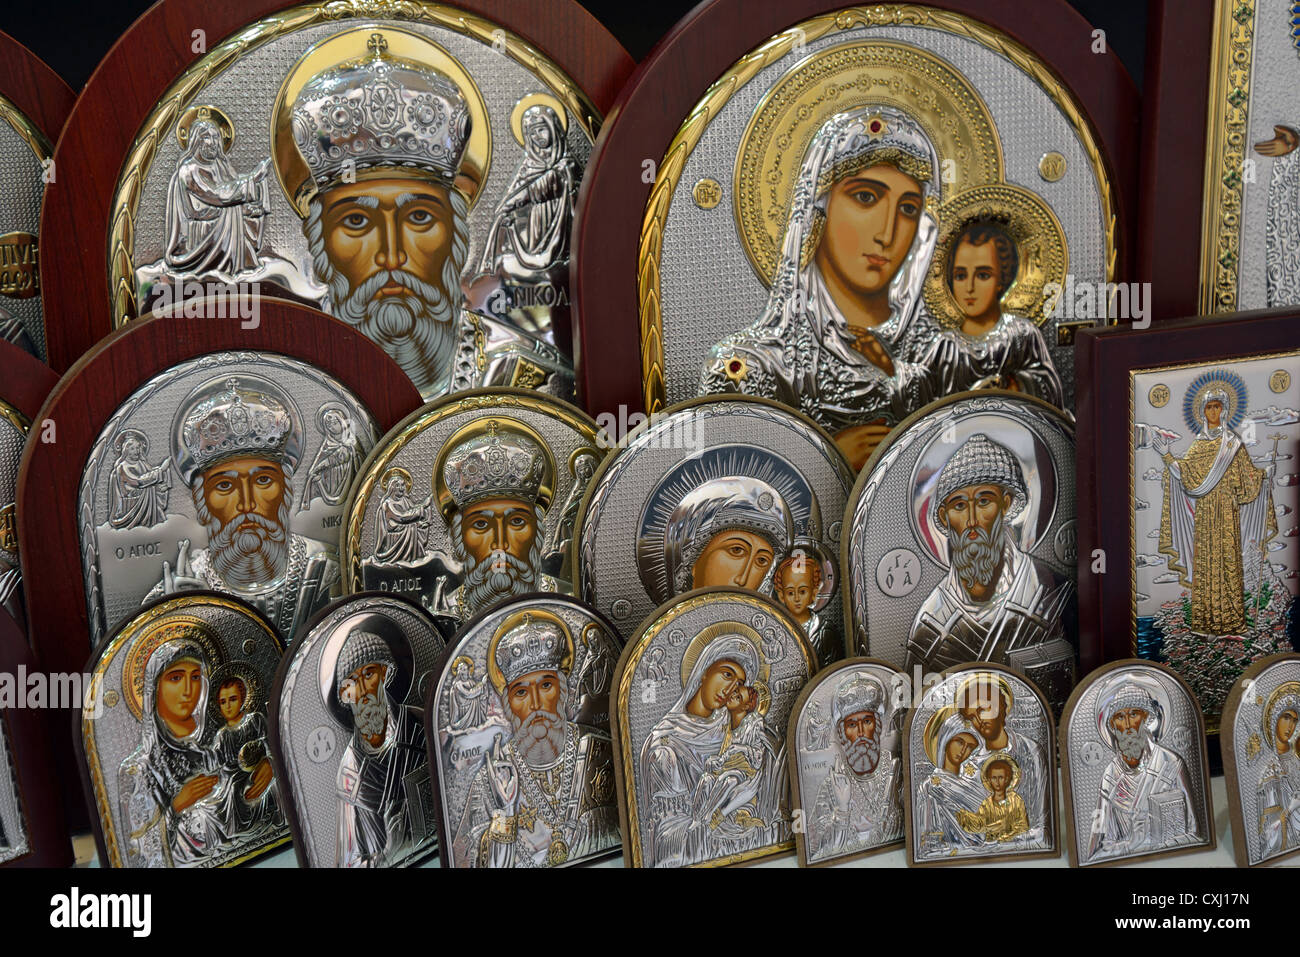 Icônes orthodoxes souvenirs en boutique, vieille ville de Corfou, Corfou (Kerkyra), îles Ioniennes, Grèce Banque D'Images